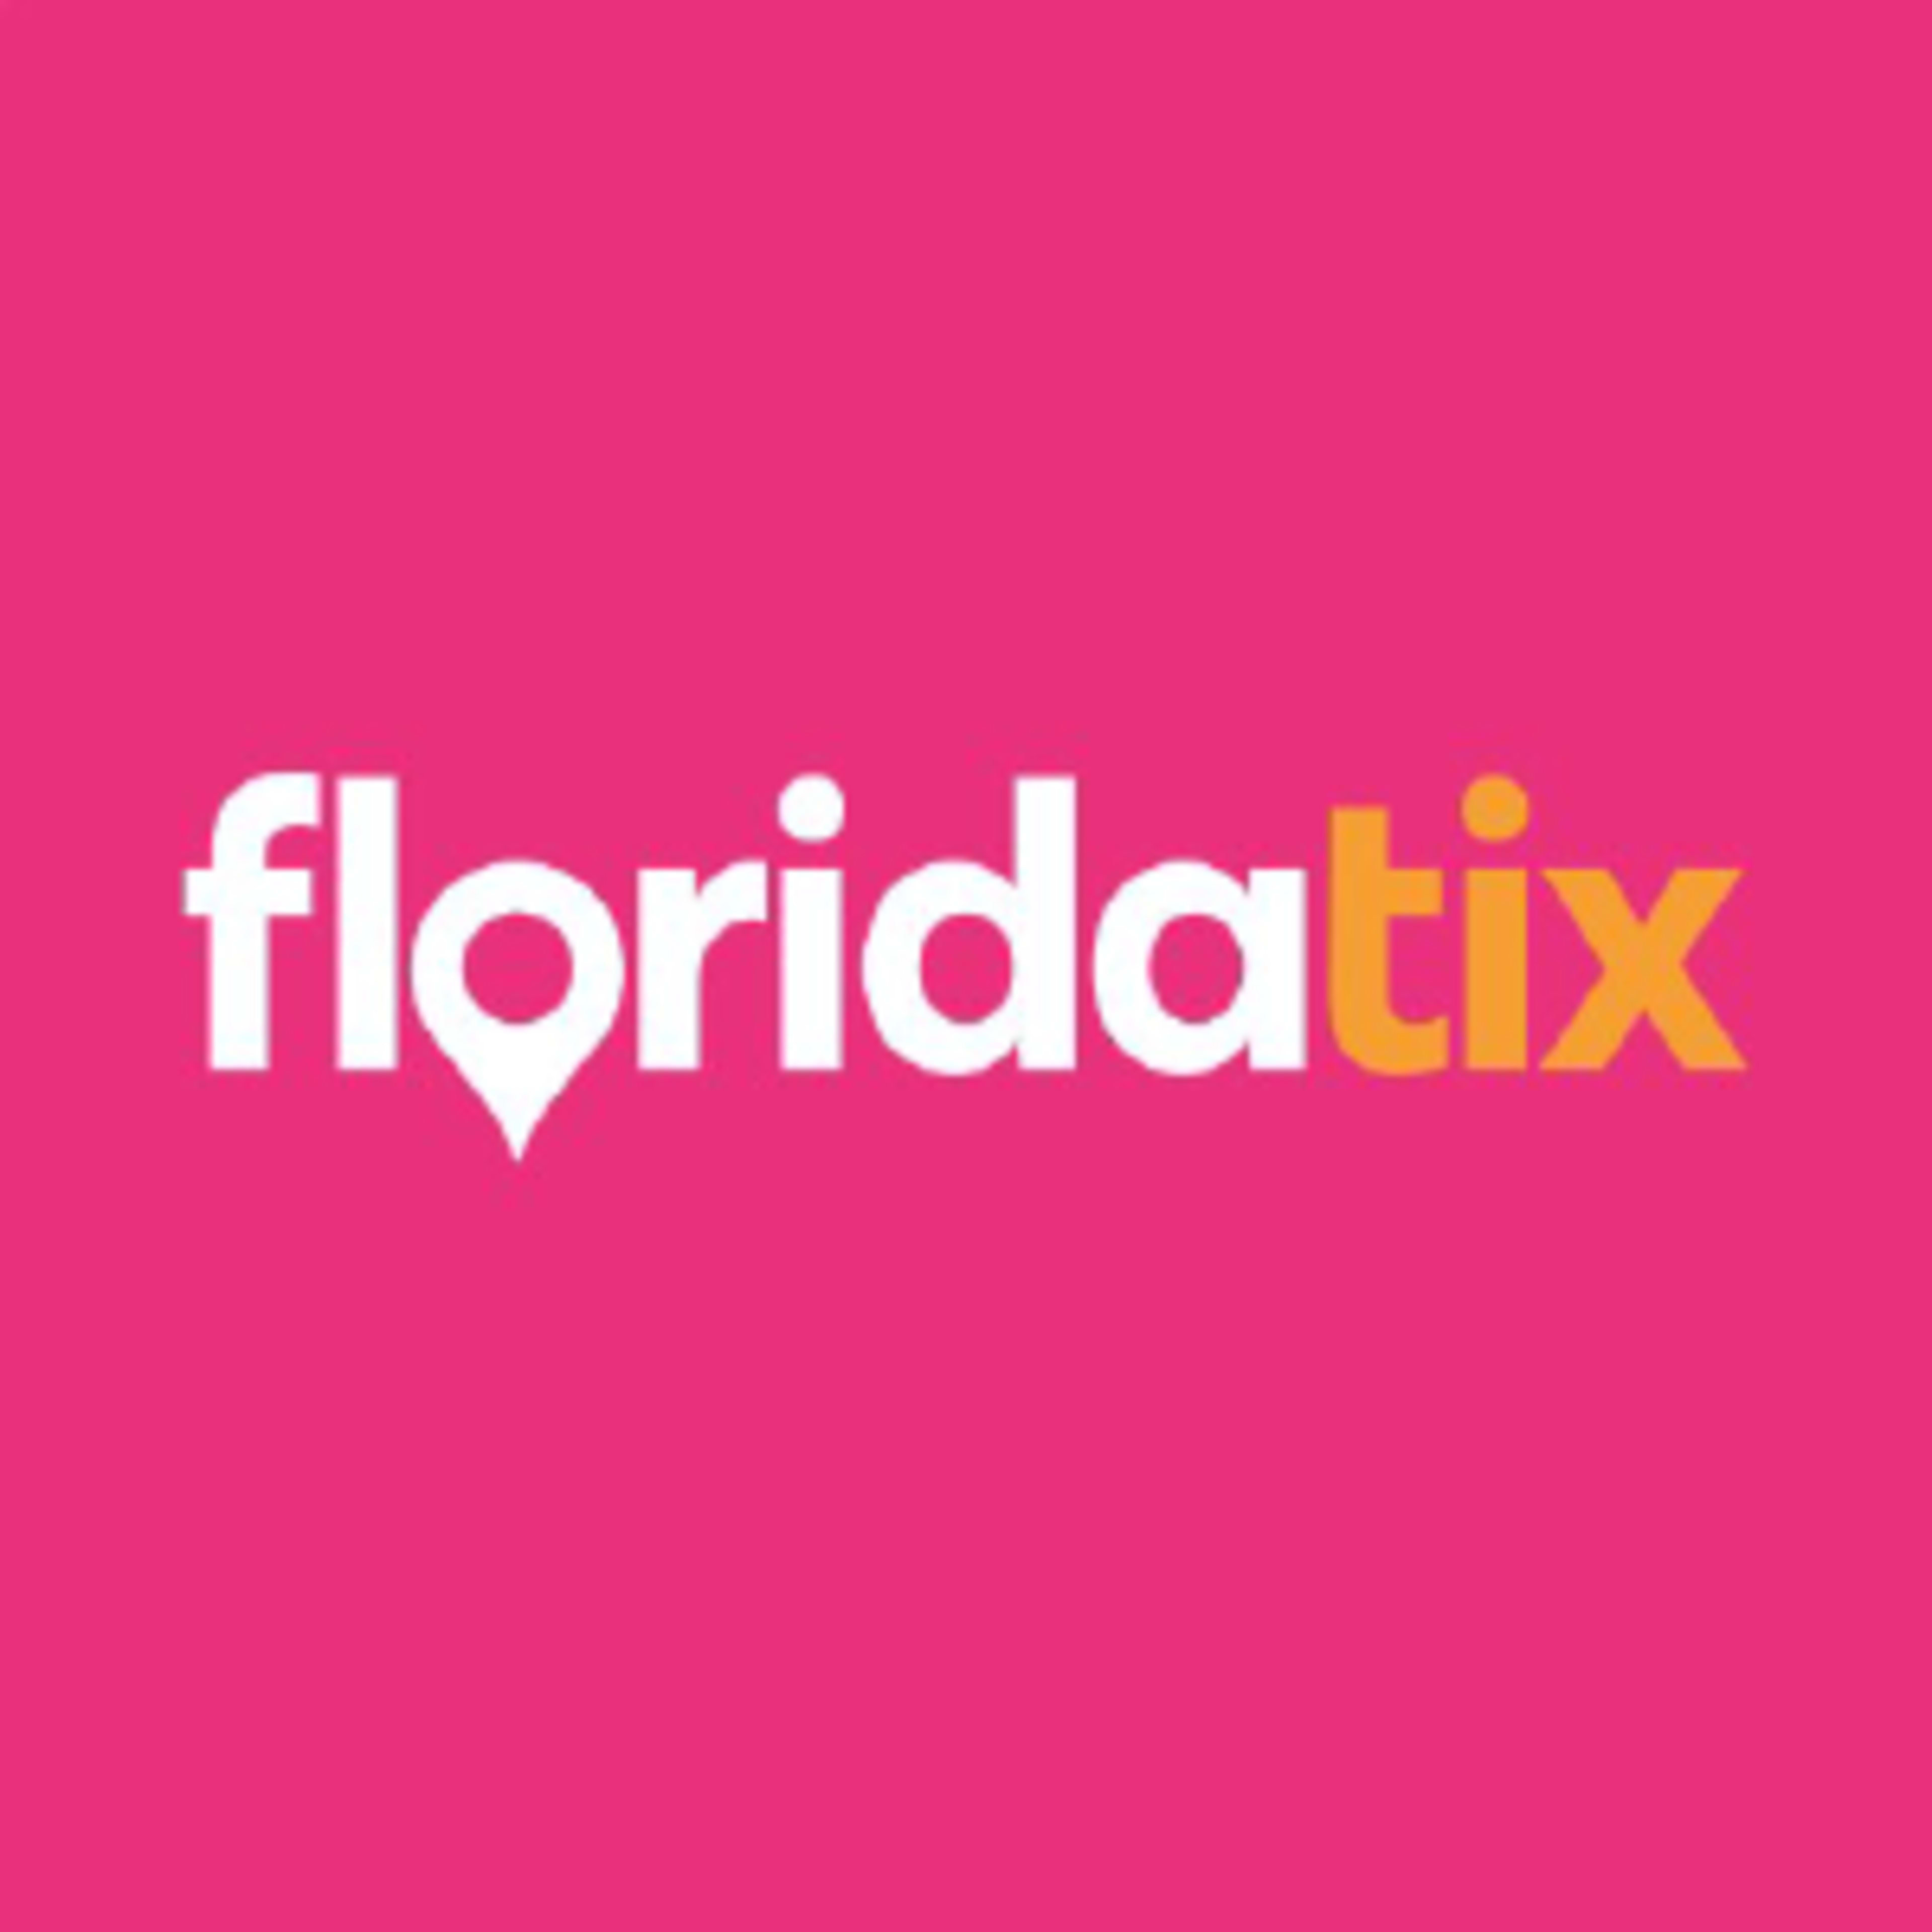 Florida Tix Code